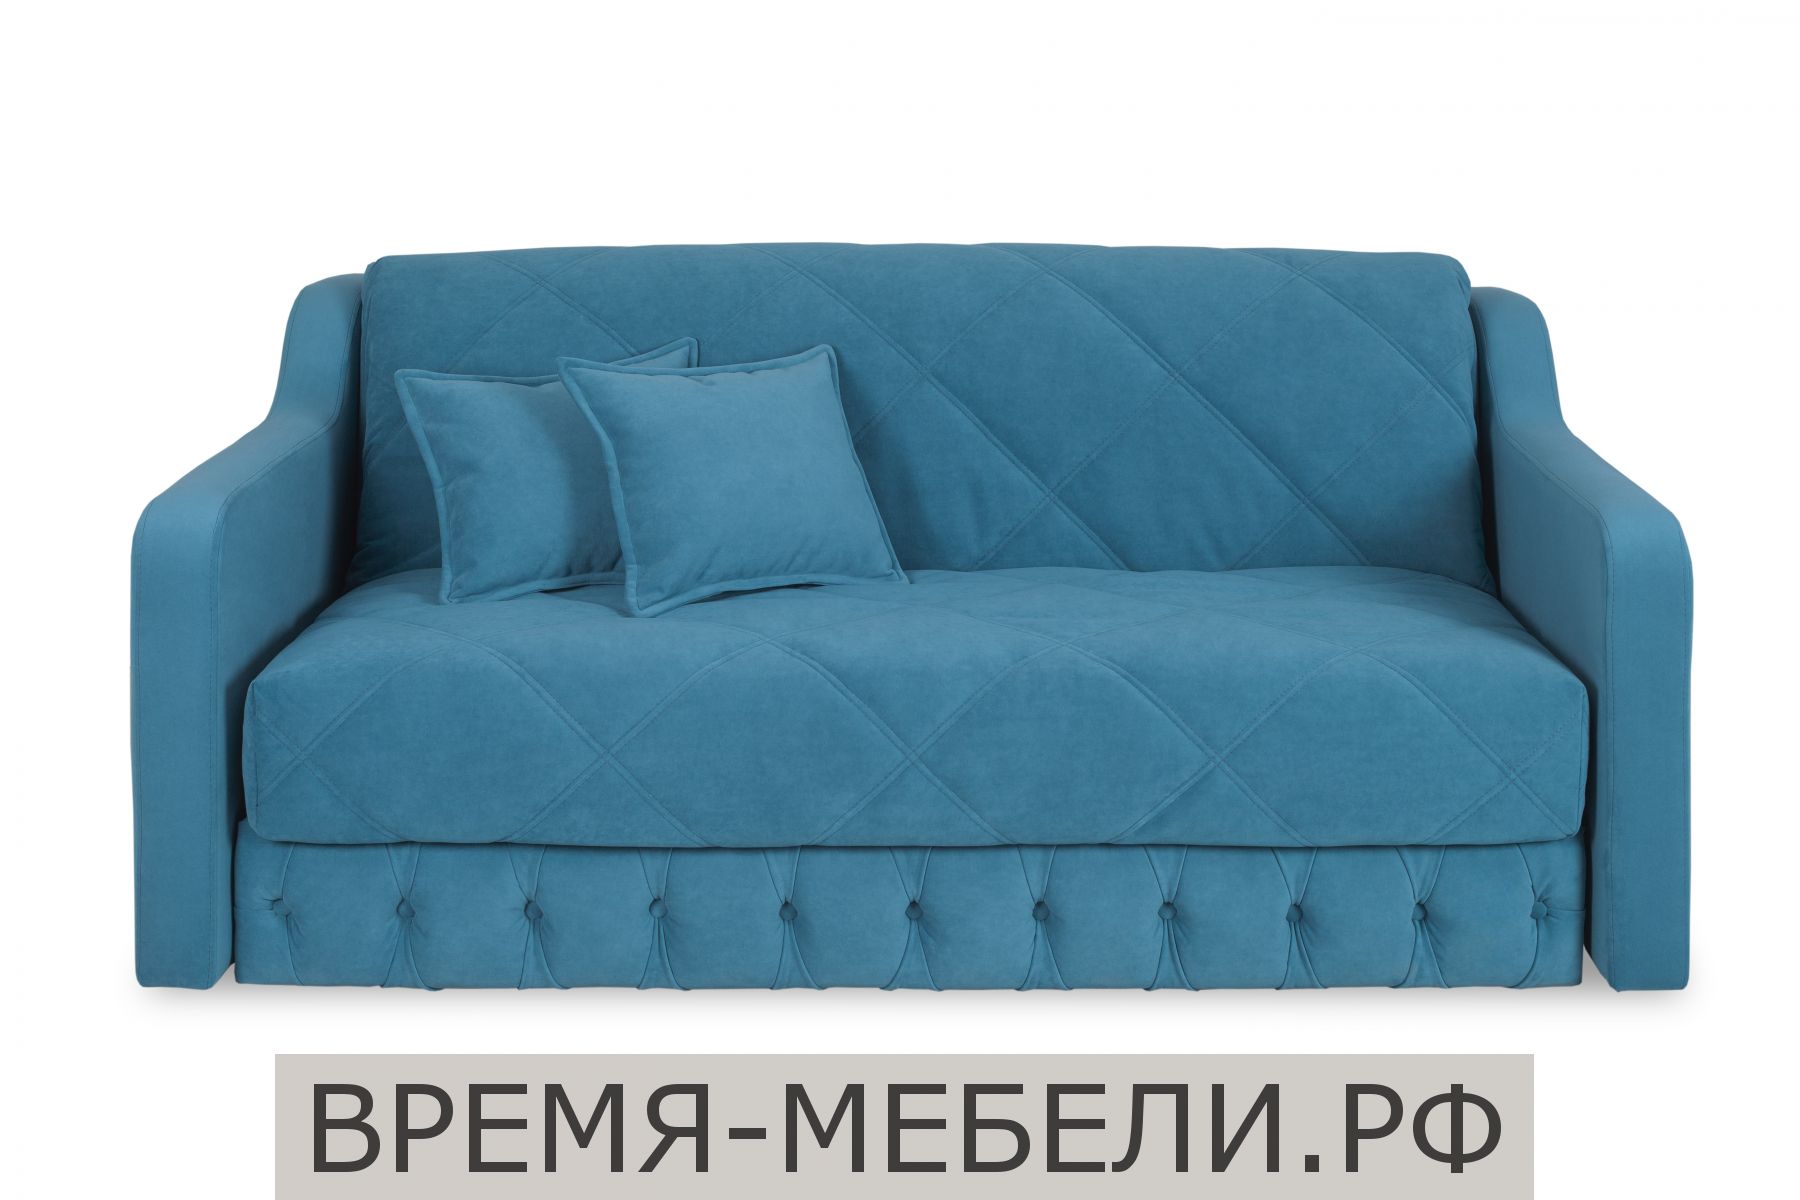 Диван-аккордеон «Римини» 1200 купить в интернет магазине мебели по низкойцене с бесплатной доставкой по Конаково и Москве!